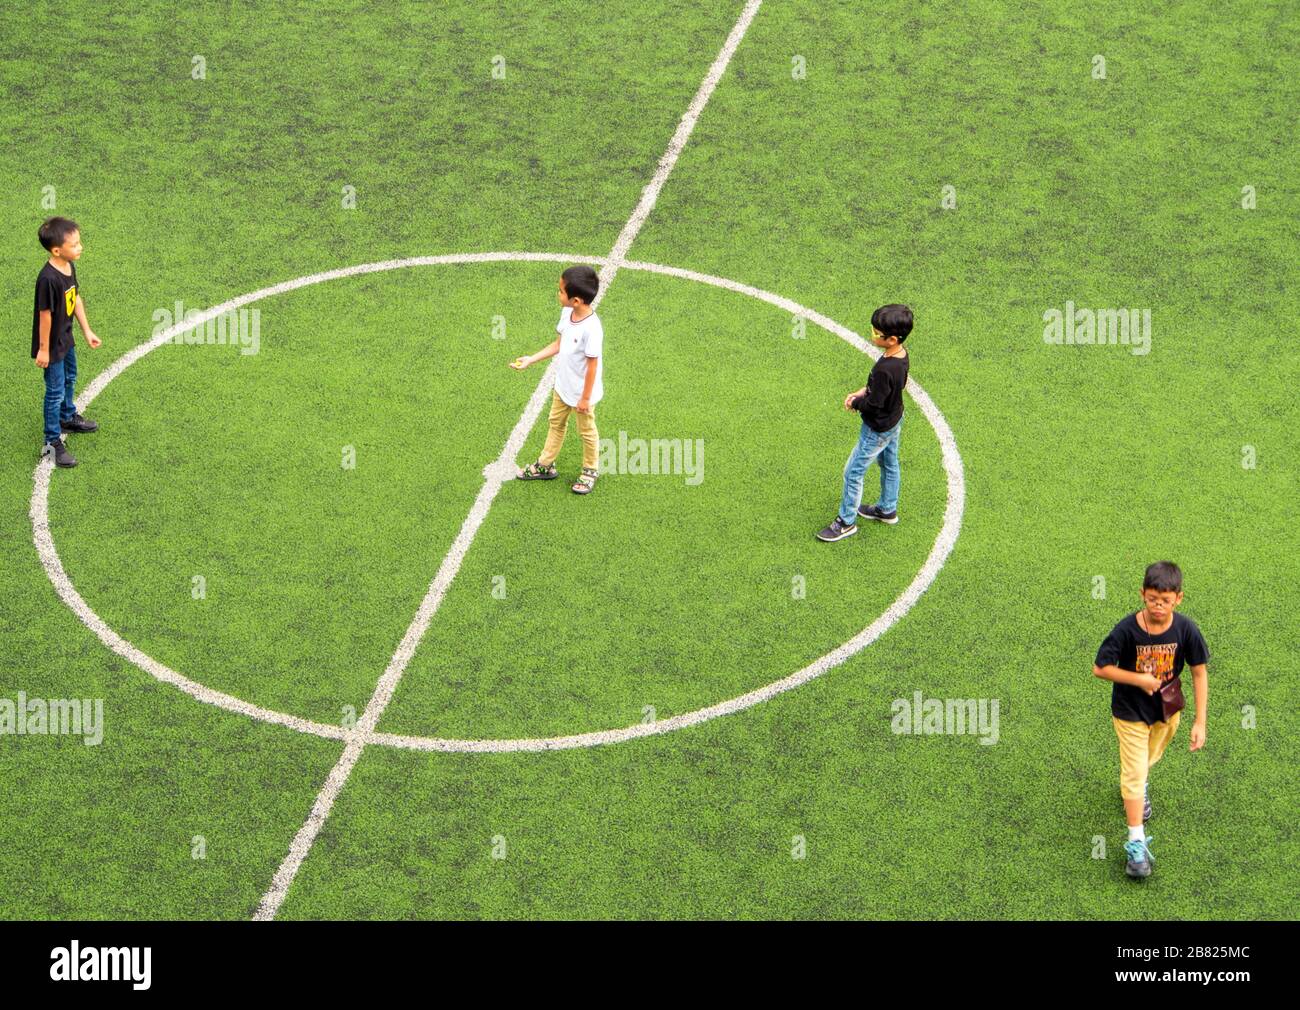 BANGKOK THAÏLANDE - APIRL 24 : enfants non identifiés jouant pendant le petit-déjeuner le 24 avril 2017 dans le terrain de football scolaire. Banque D'Images